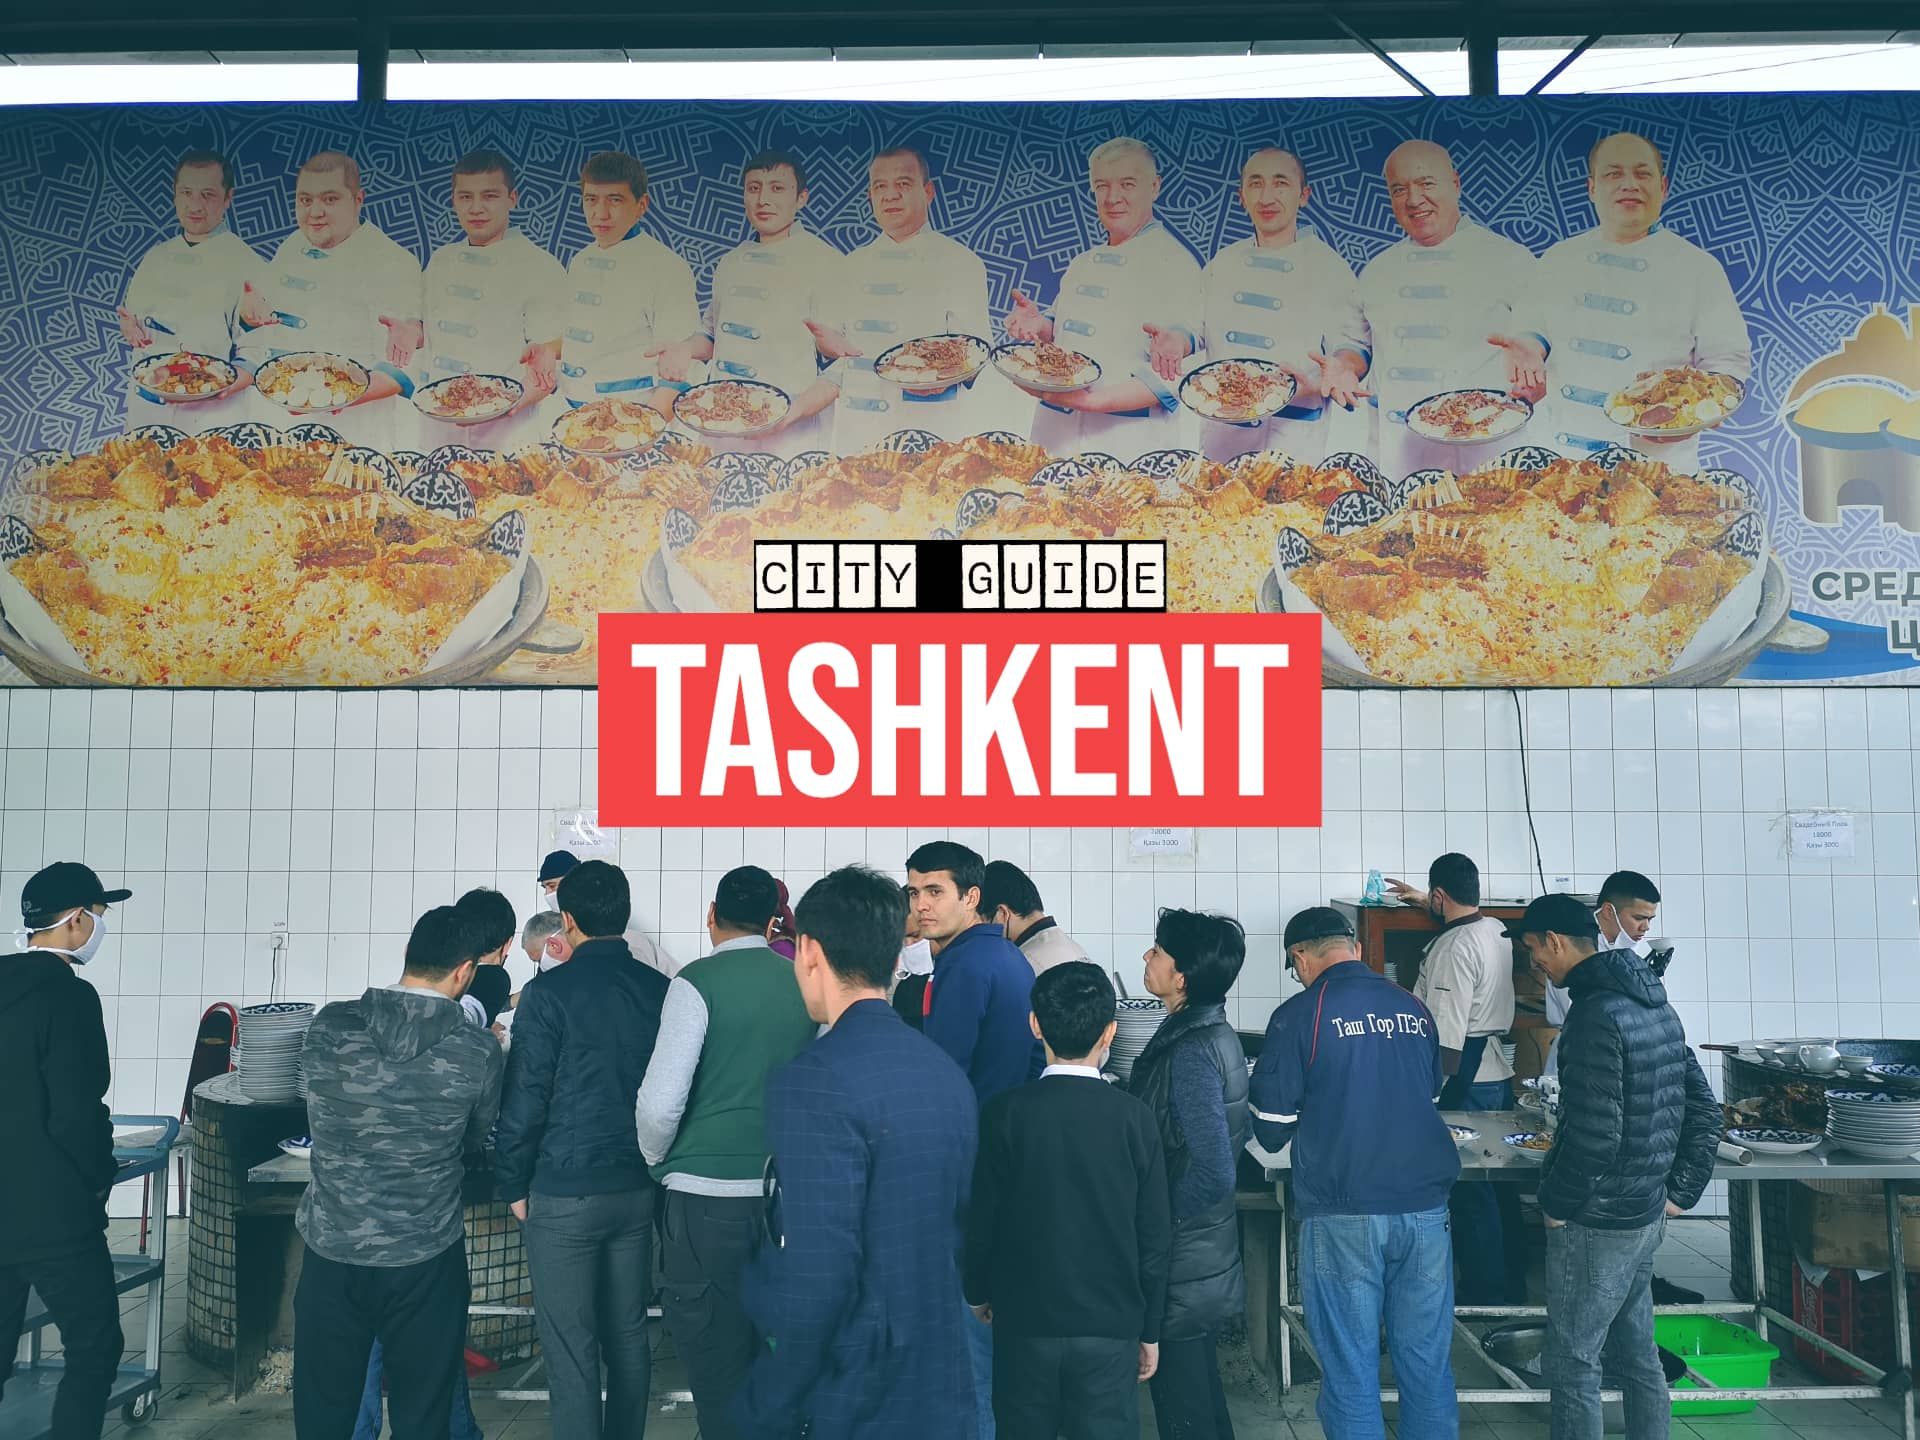 Banner Image For Tashkent City Guide Artwork